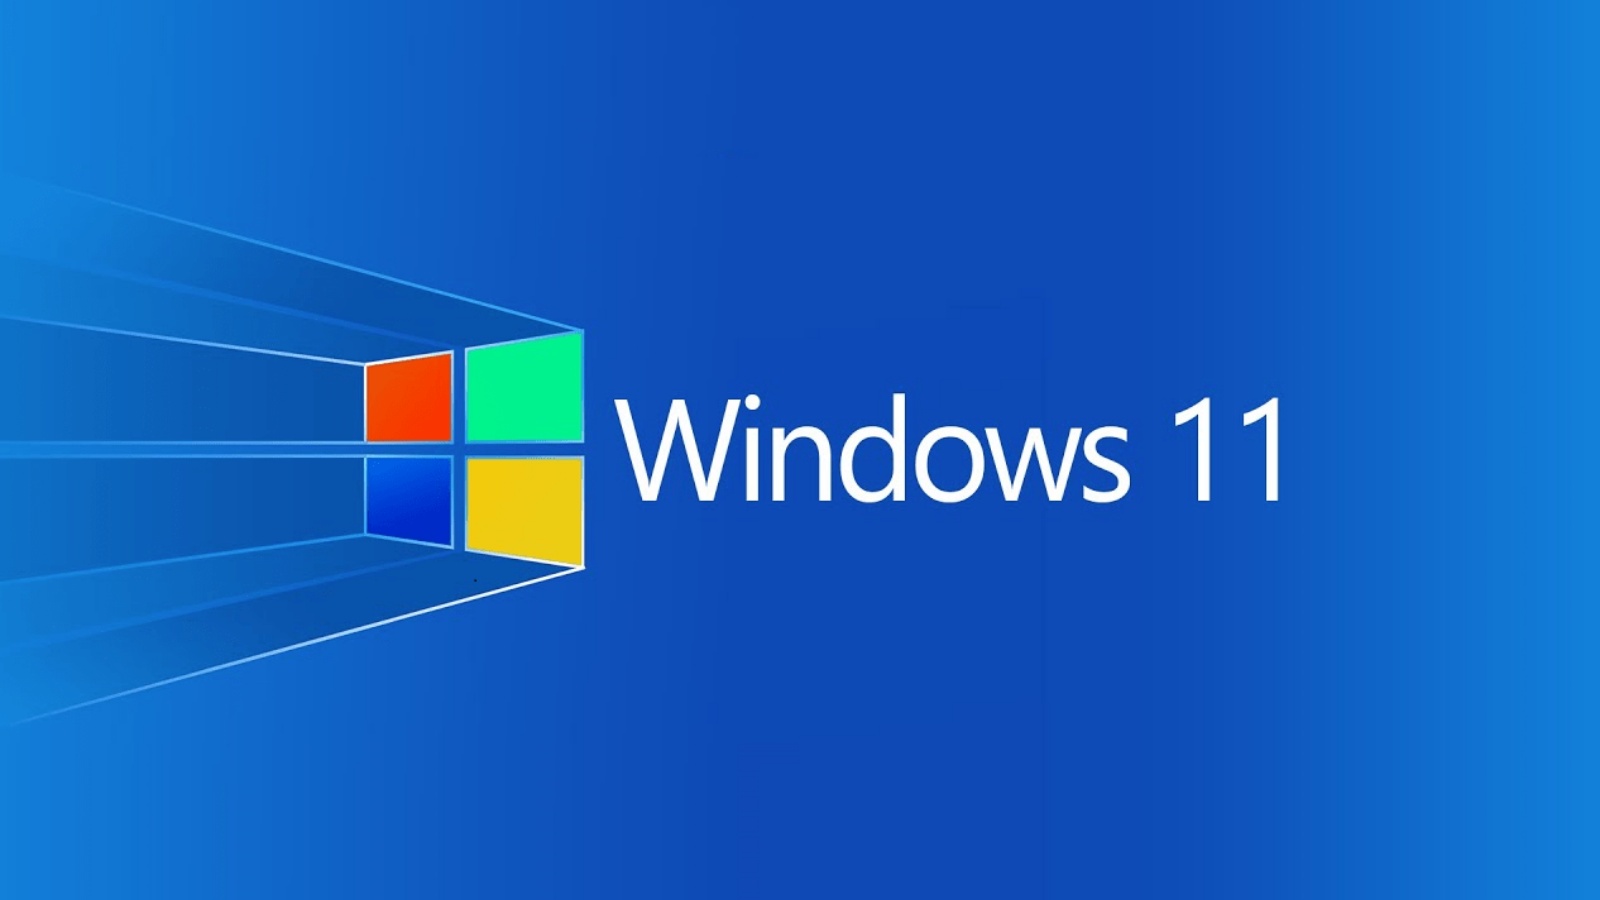 Microsoft Updates Windows 11 BELANGRIJK Wijzigingen die u zult zien Computer